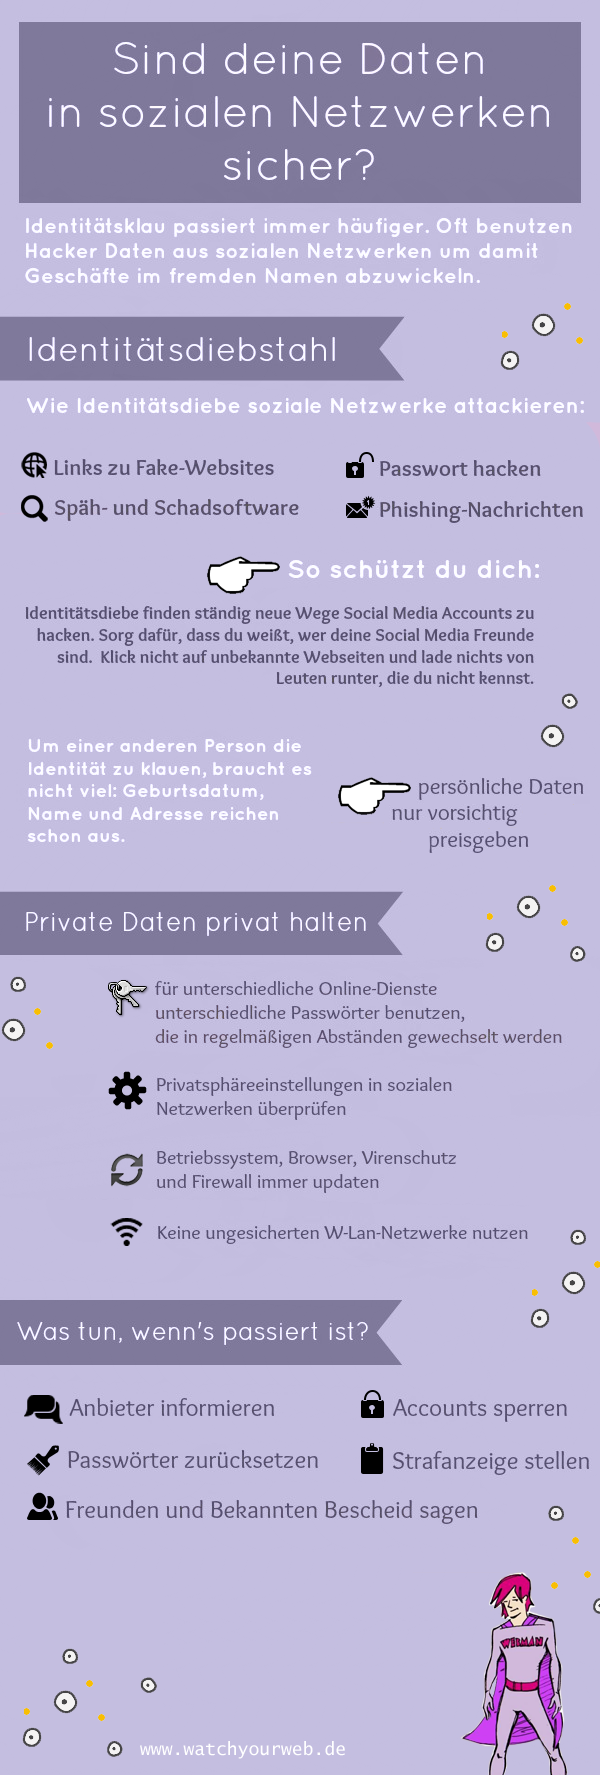 infografik_identitaetsklau